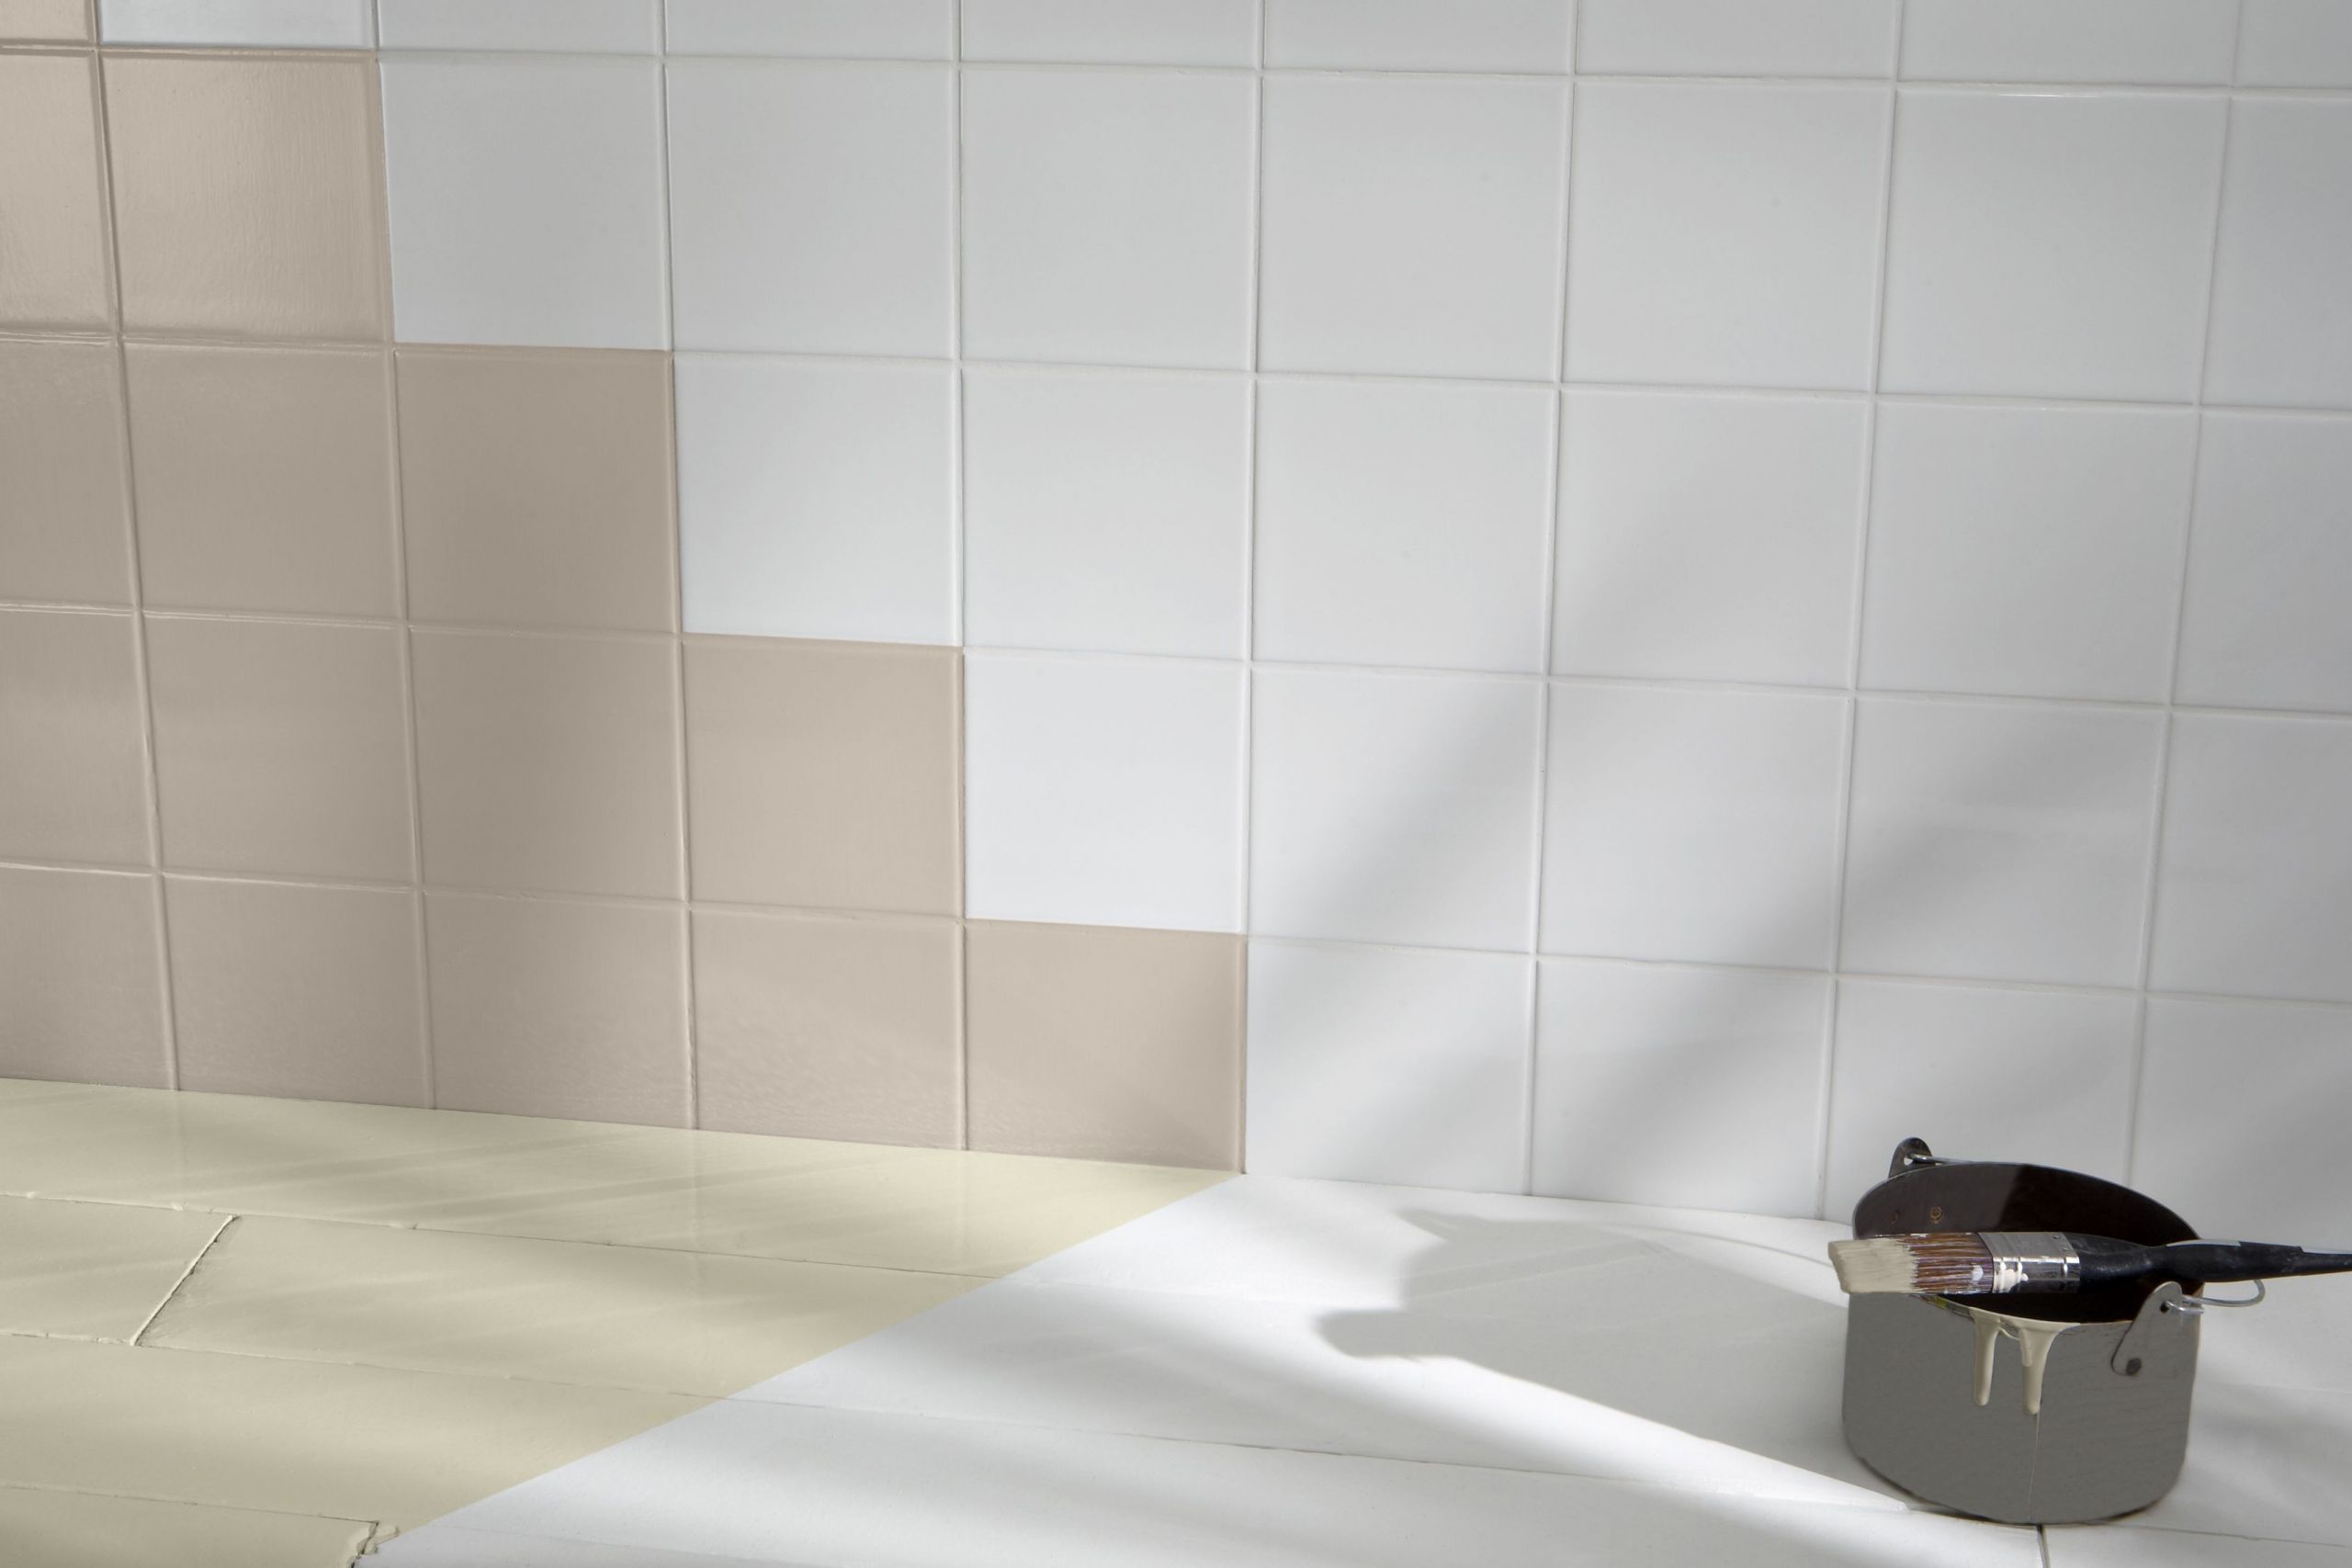 Diy Paint Bathroom Tile
 How to paint tiles Ideas & Advice